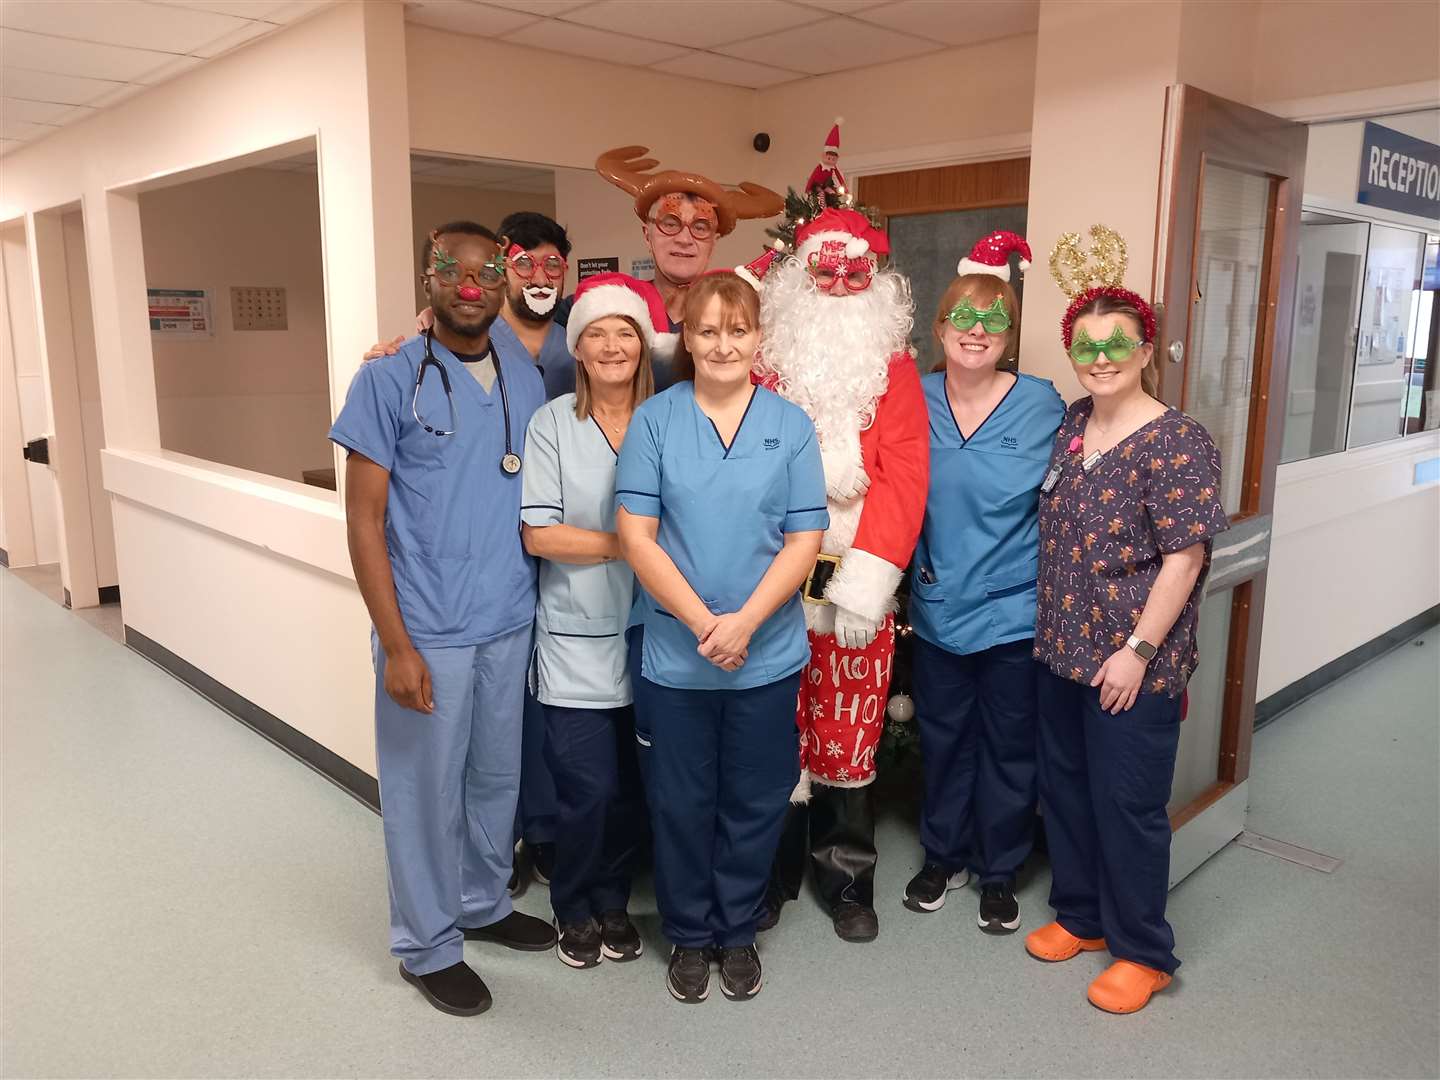 Derek dressed as Santa at the A& E ward